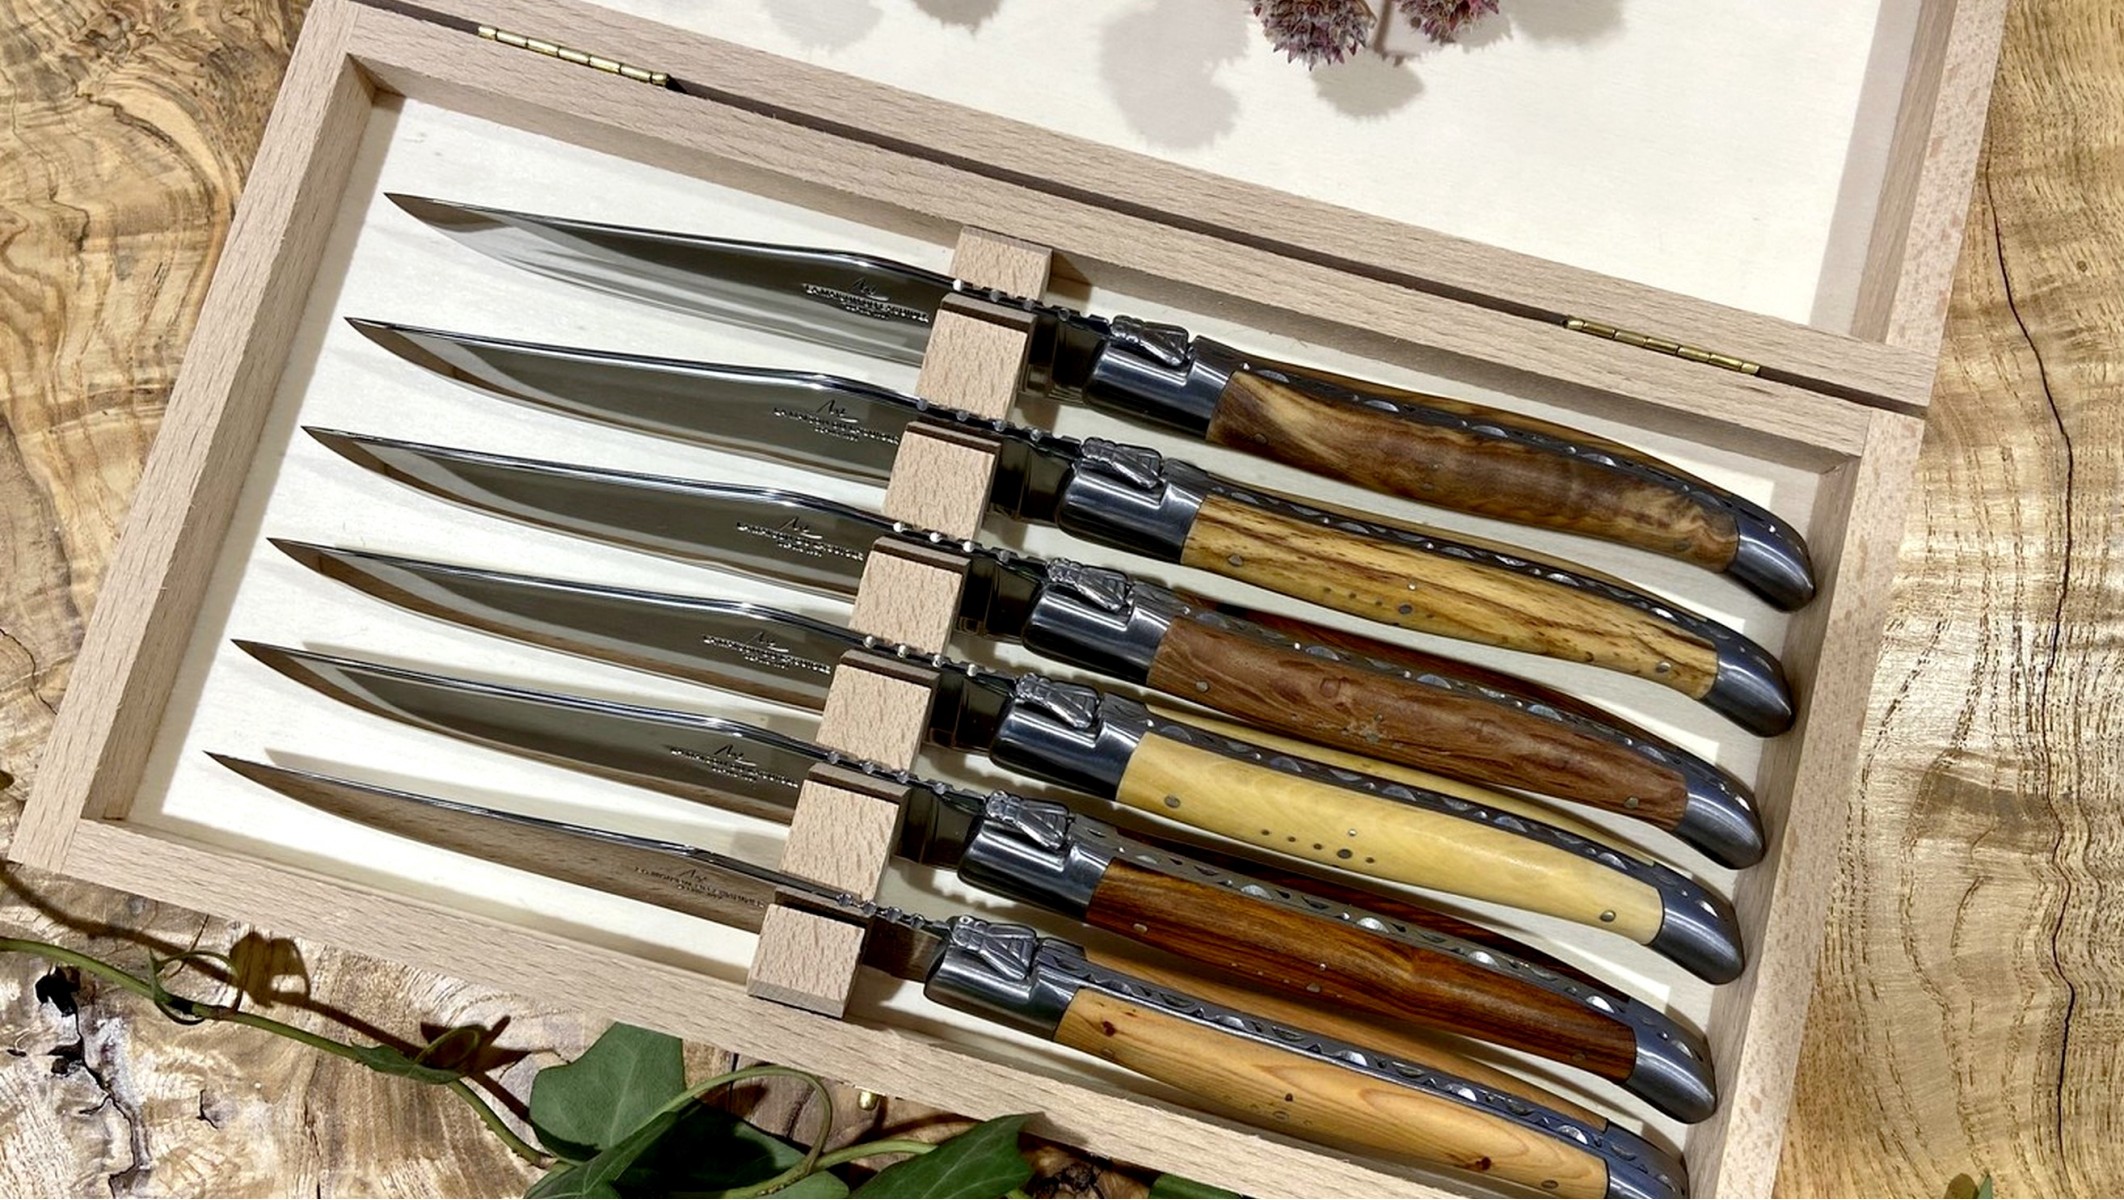 6 Couteaux de Table Laguiole en Aubrac en bois de Genévrier